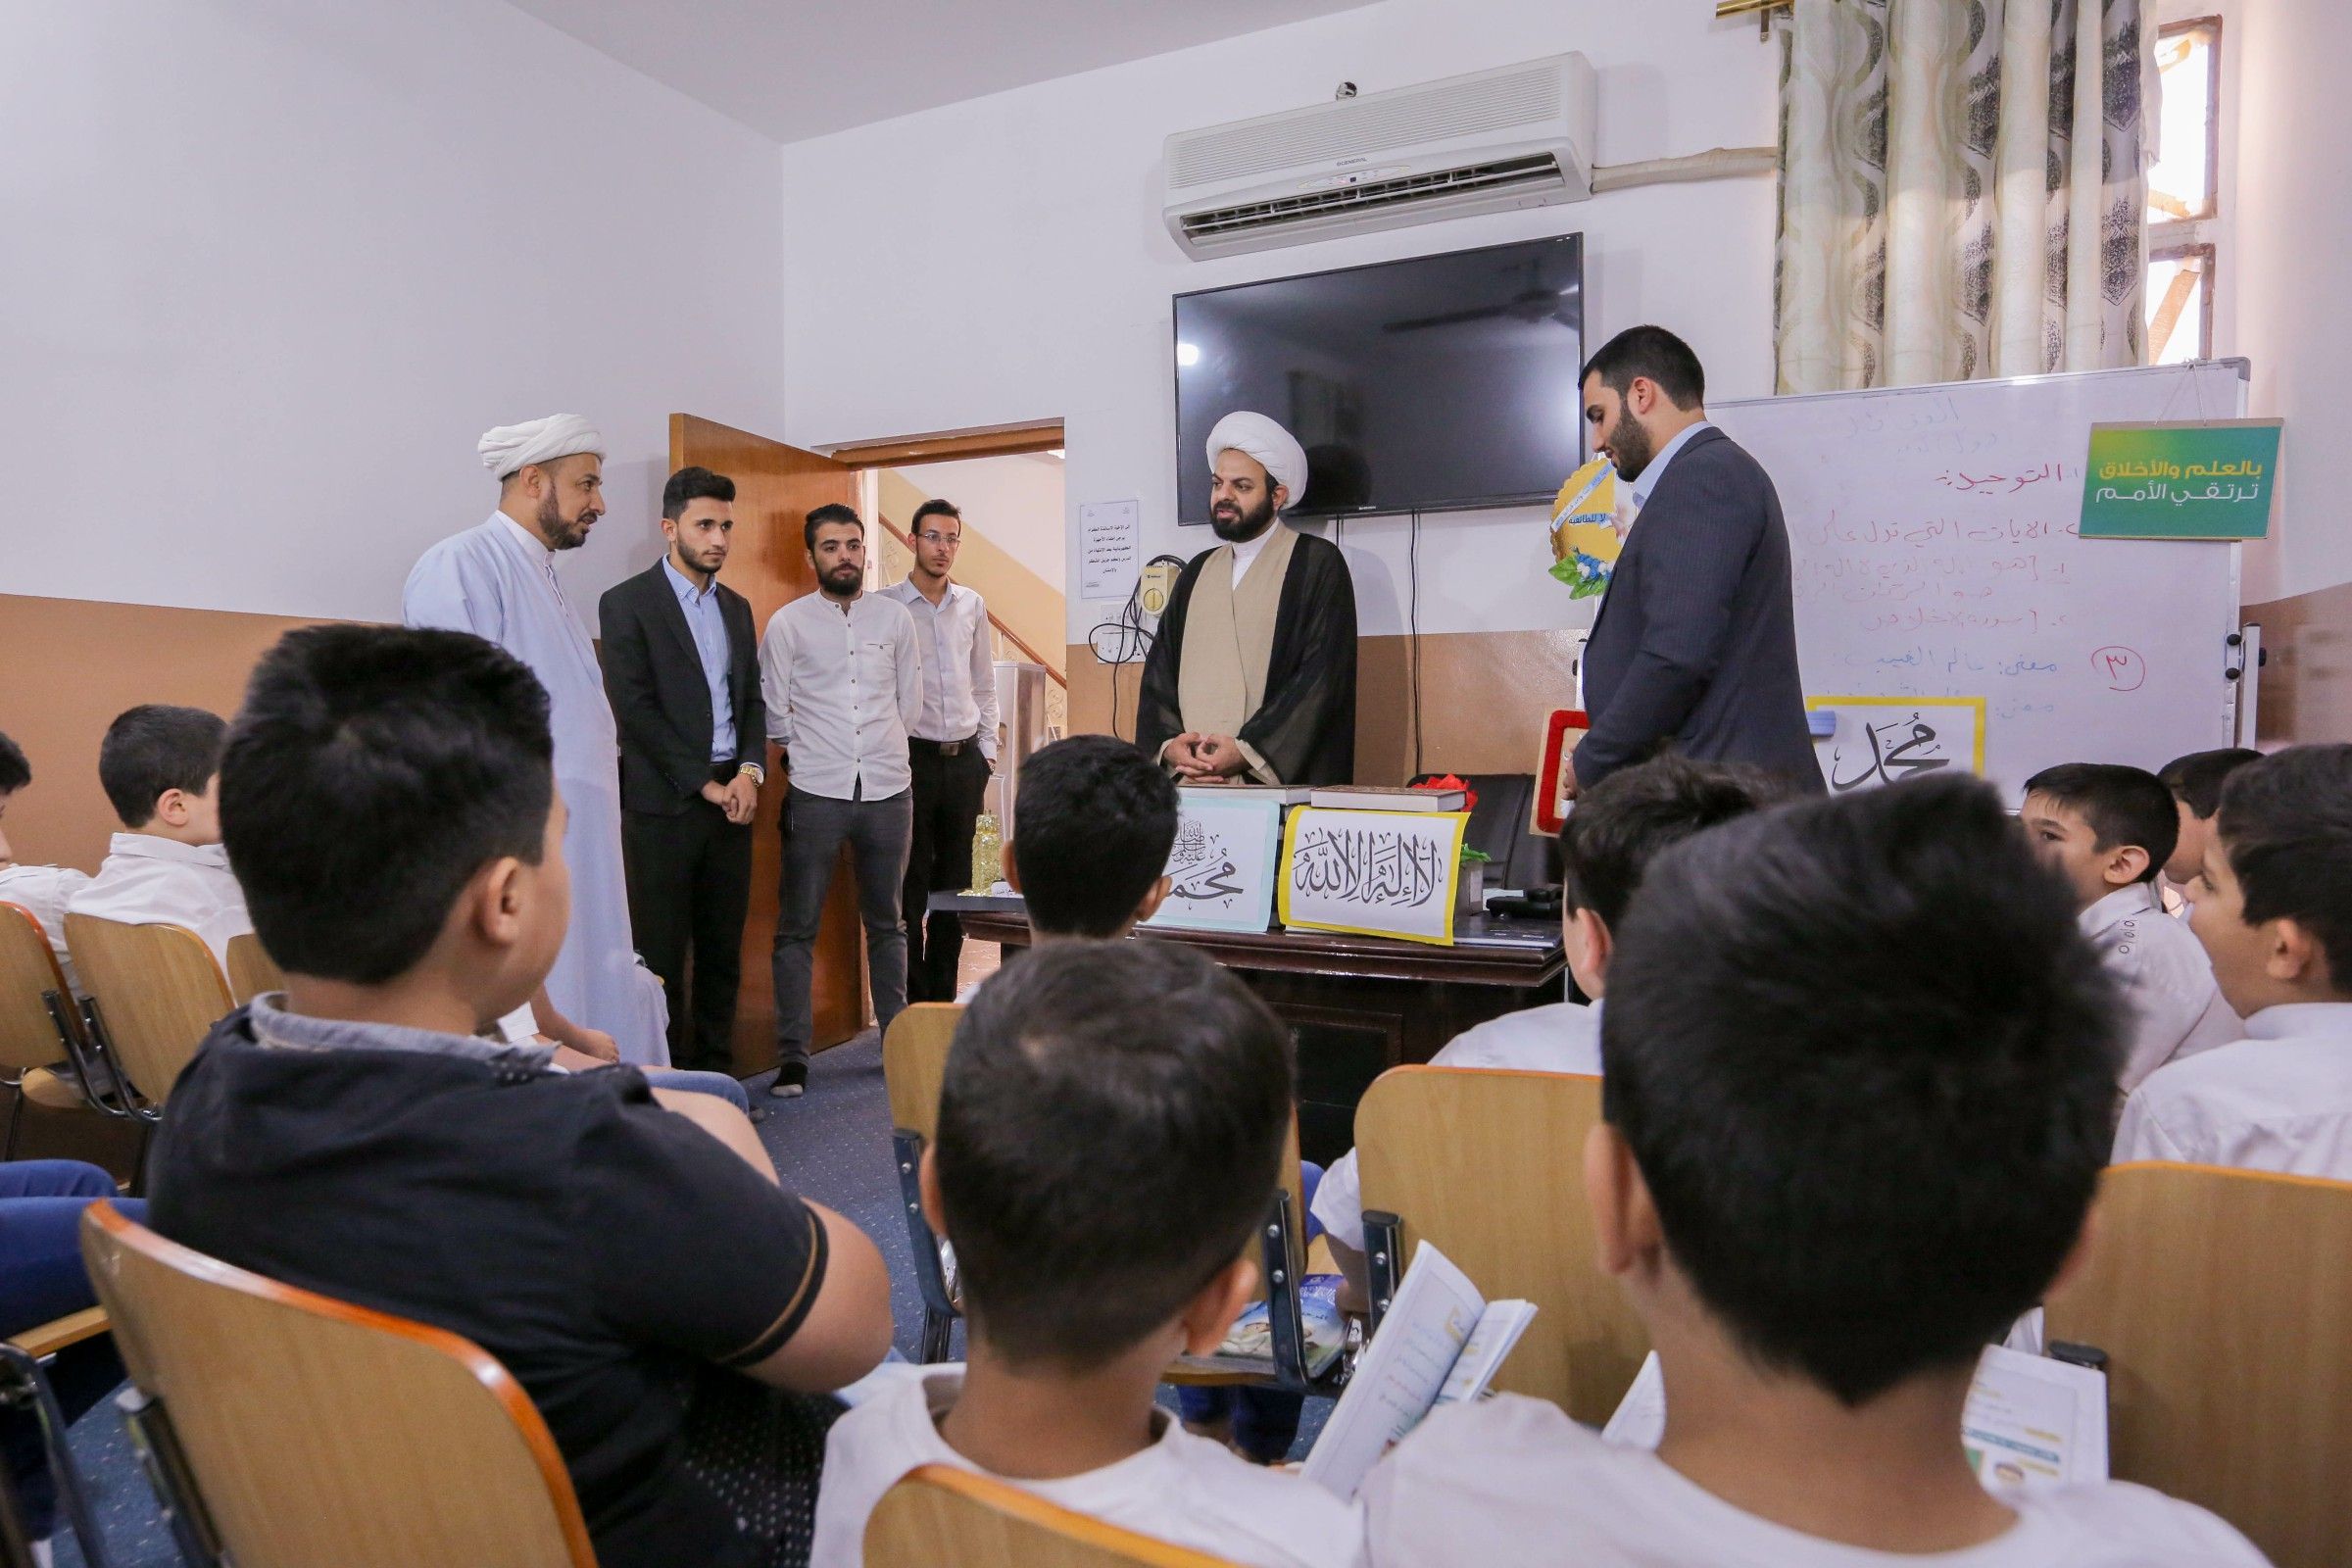 مدير معهد القرآن الكريم: إقبال الطلبة وتفاعلهم مع المشروع يدفعنا لبذل كل الجهود بغية خدمتهم وتعليمهم.